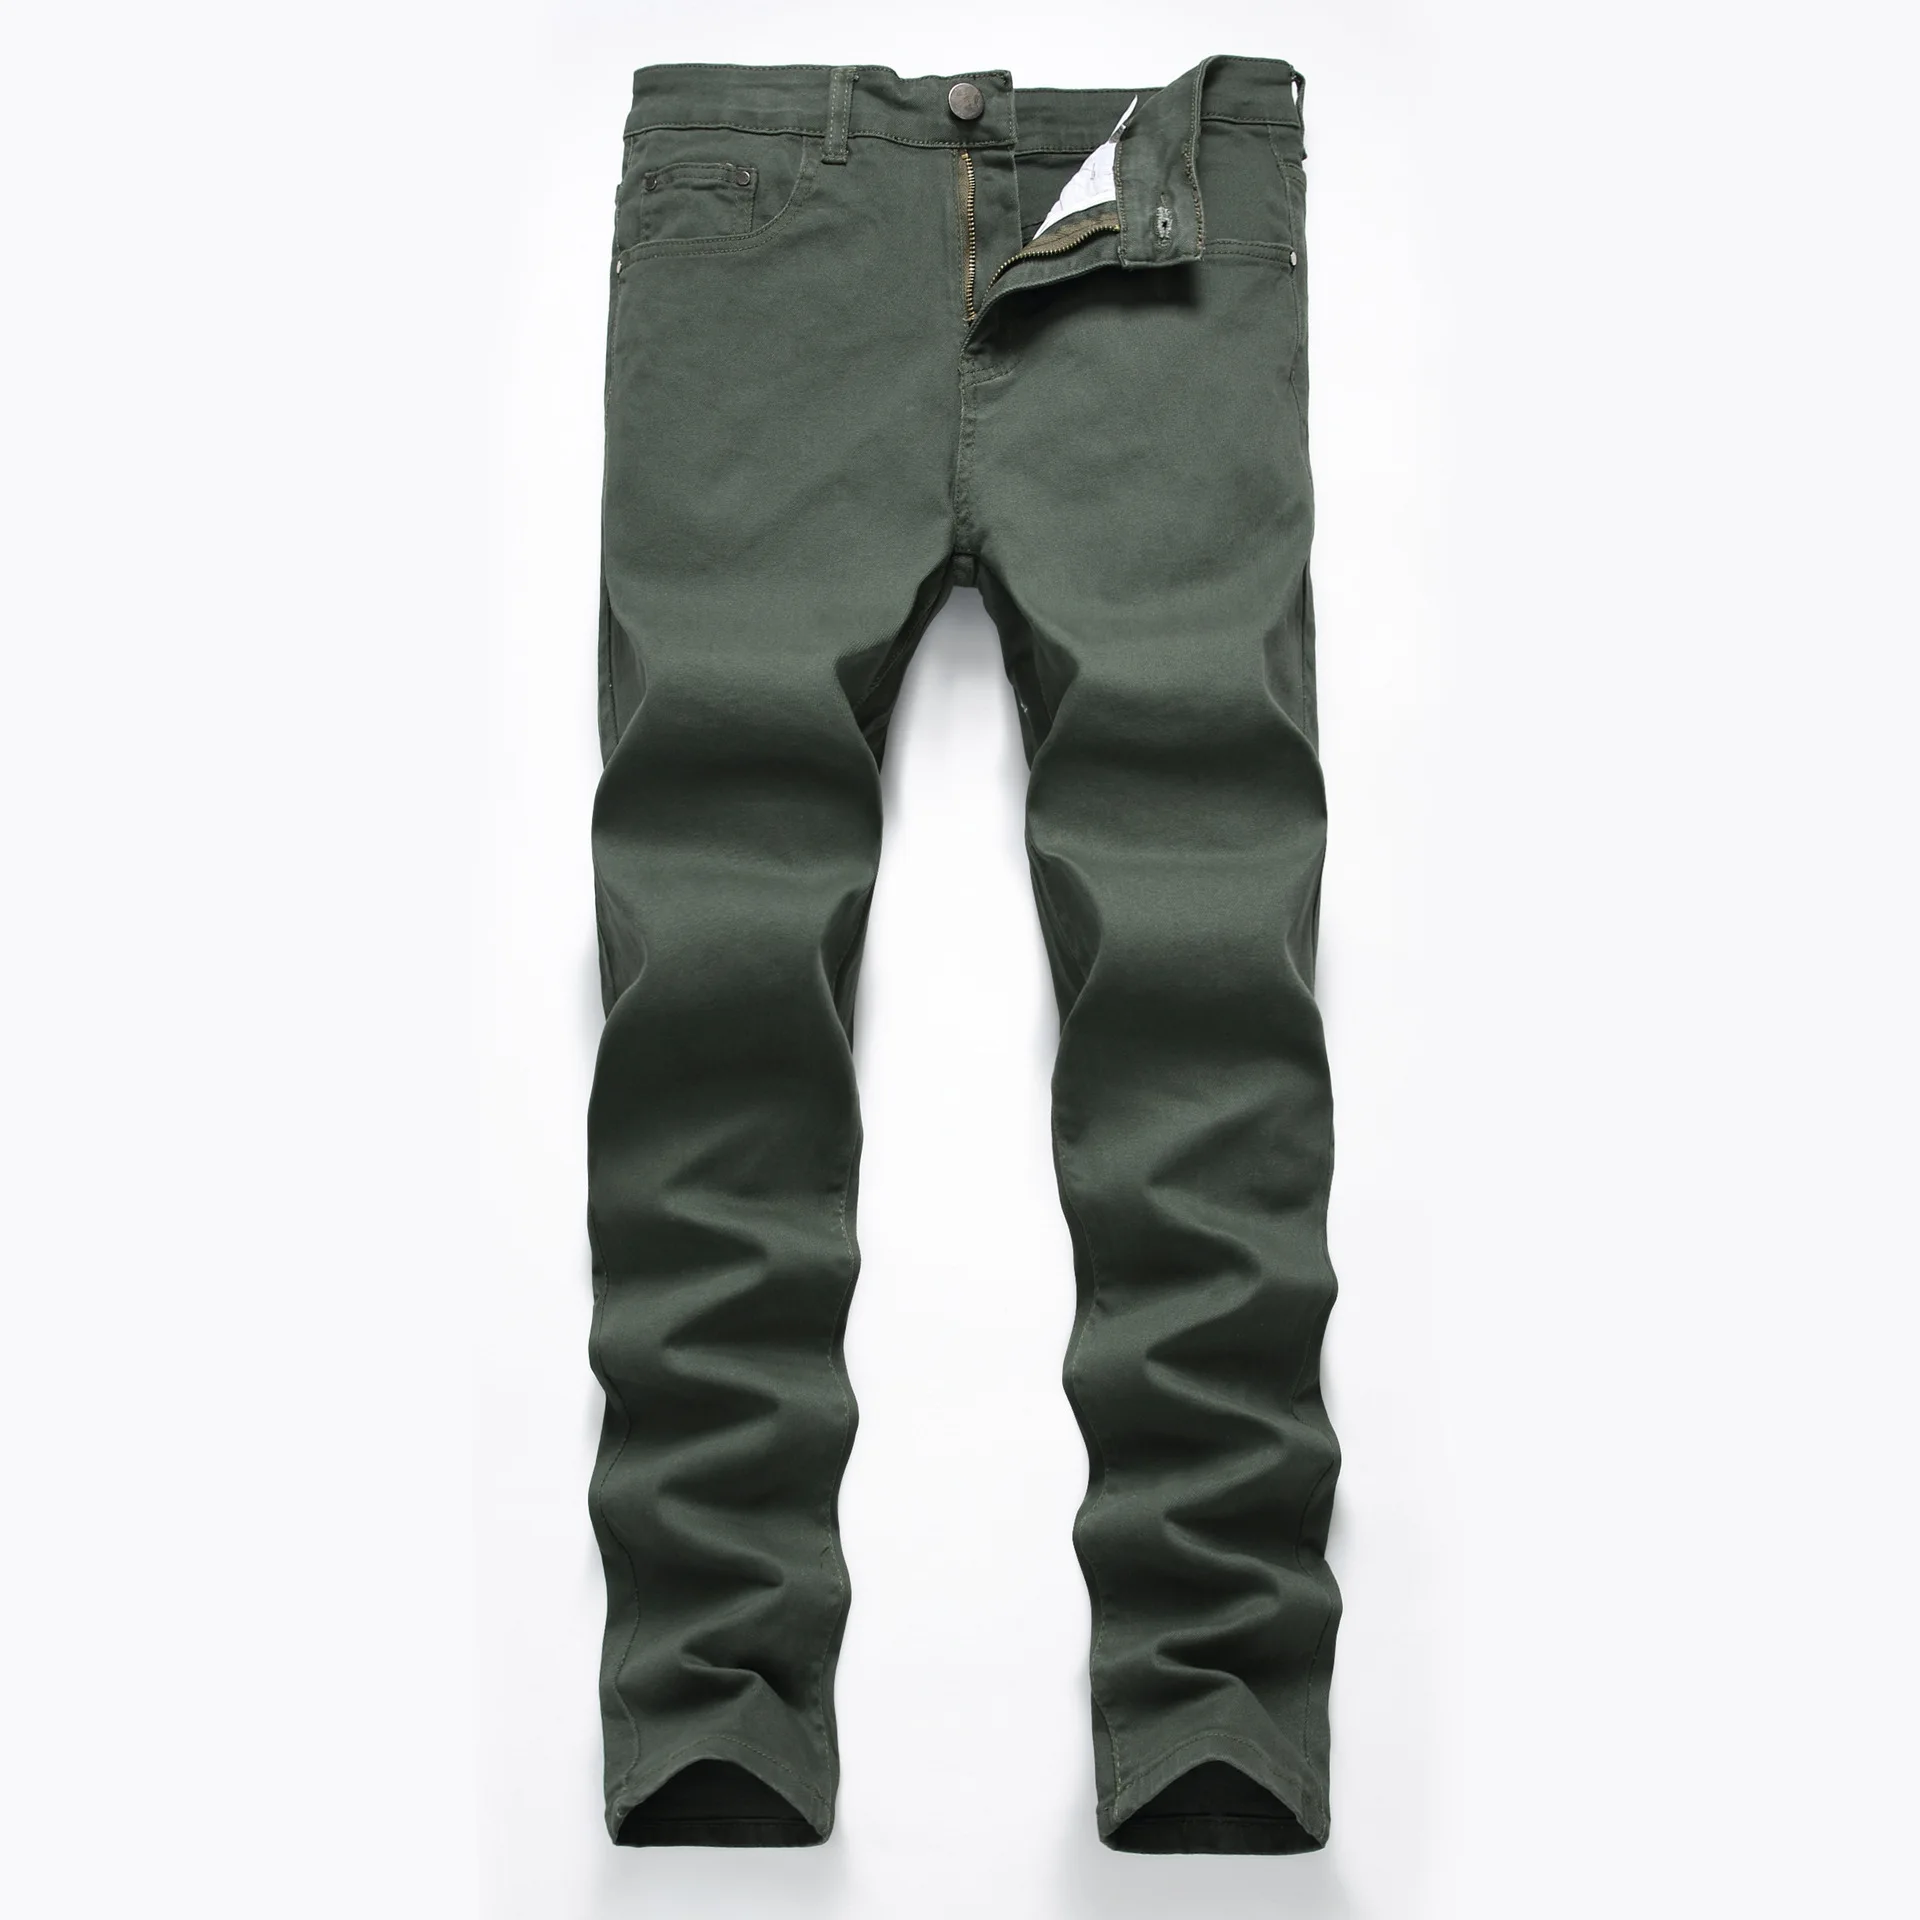 Для мужчин Байкер Джинсы для женщин Бизнес летние прямые Slim Fit синие джинсы стрейч джинсовые штаны Мотобрюки классический ковбой человек промывали Рваные джинсы - Цвет: 7006 army green